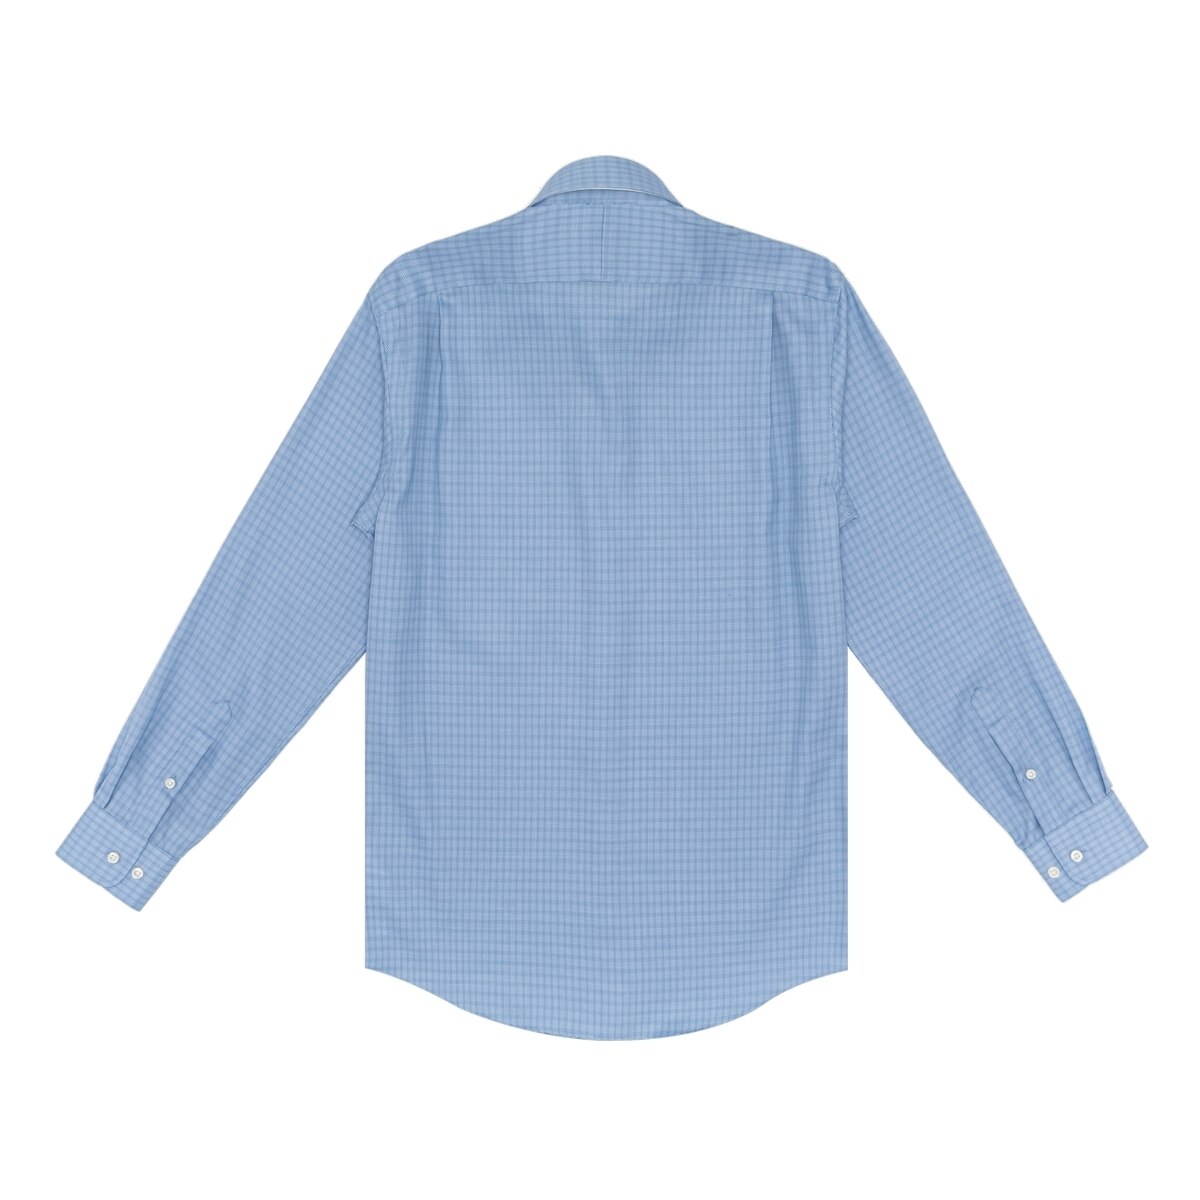 Kirkland Signature 科克蘭 男長袖鈕扣領印花襯衫 藍色格紋 領圍 17.5吋 X 袖長 32/33吋